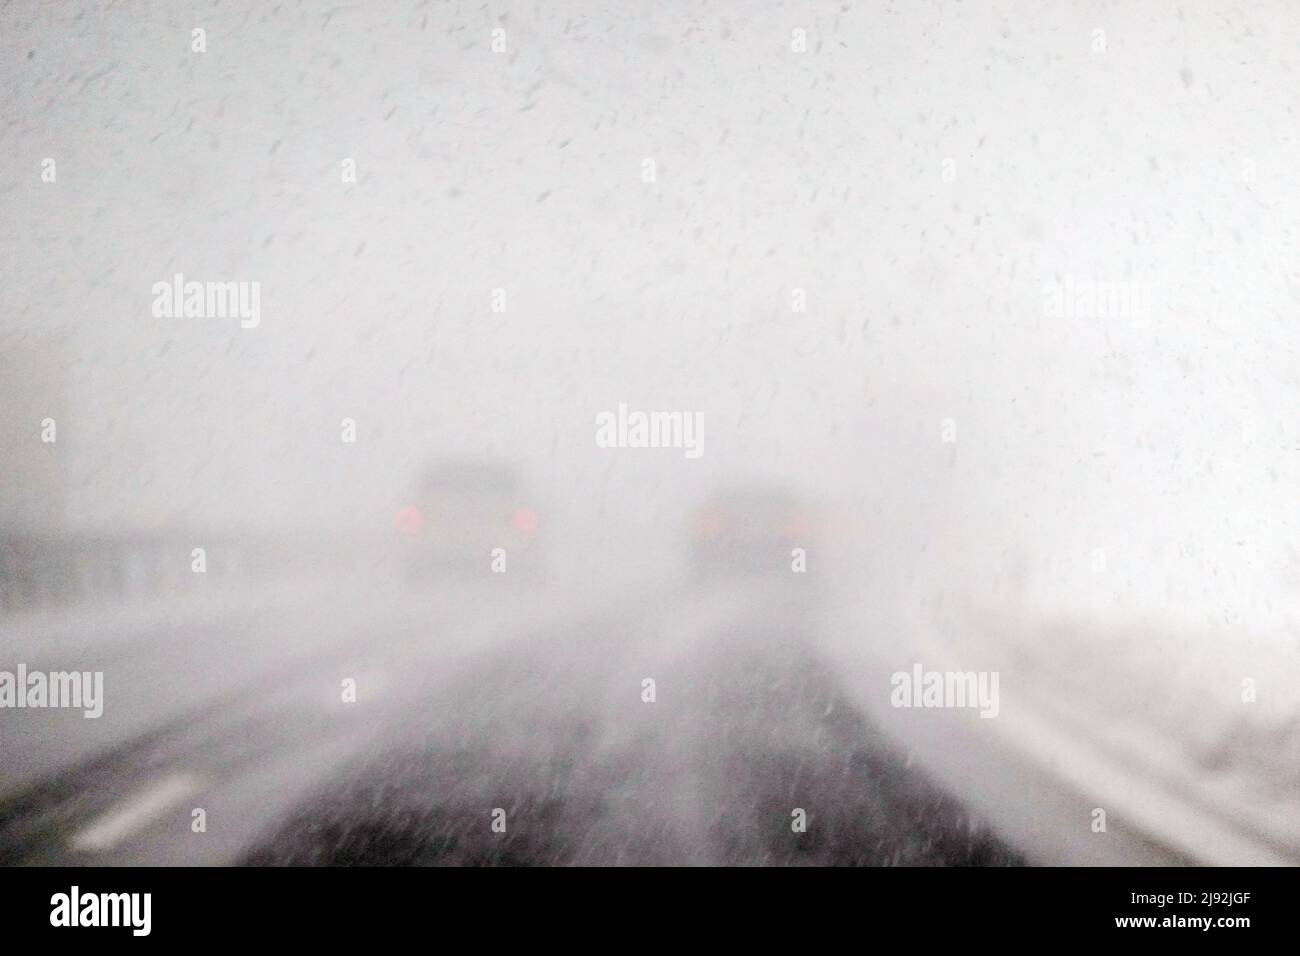 28.01.2022, Kufstein, Tirol, Austria - Pobre visibilidad en A12 en fuertes nevadas. 00S220128D707CAROEX.JPG [VERSIÓN DEL MODELO: NO, VERSIÓN DE PROPIEDAD: NO (C) Foto de stock